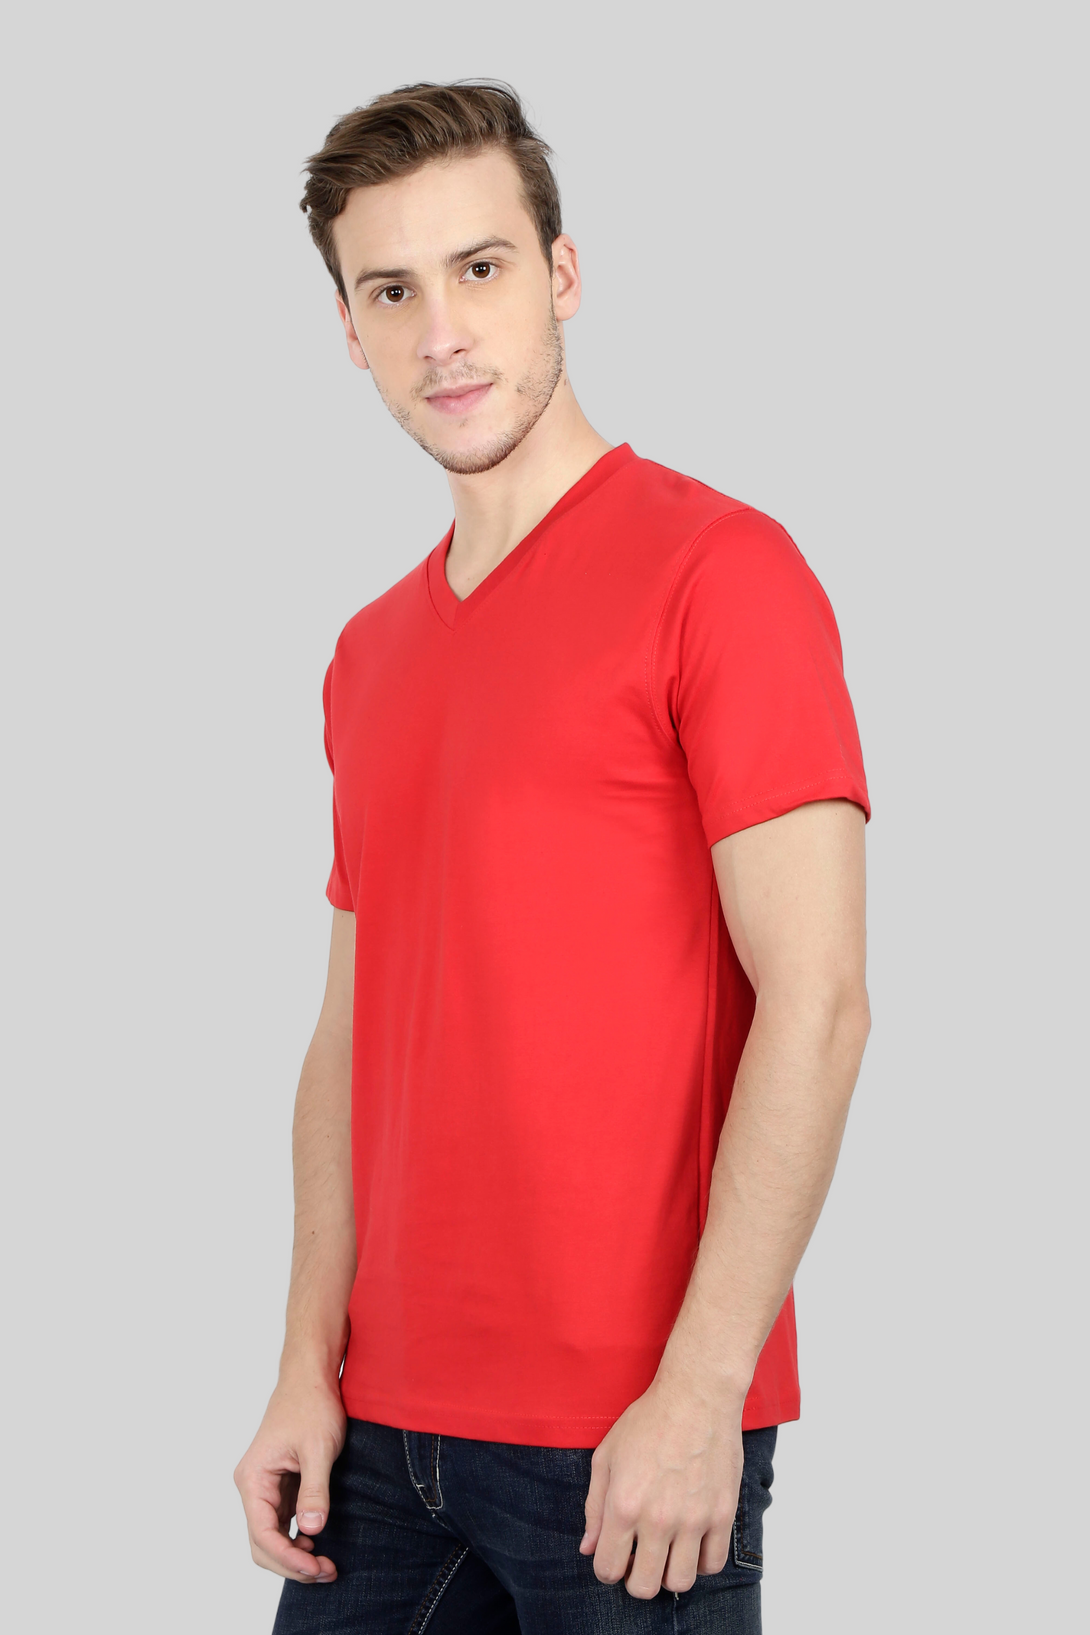 Red V Neck T-Shirt For Men - WowWaves - 6